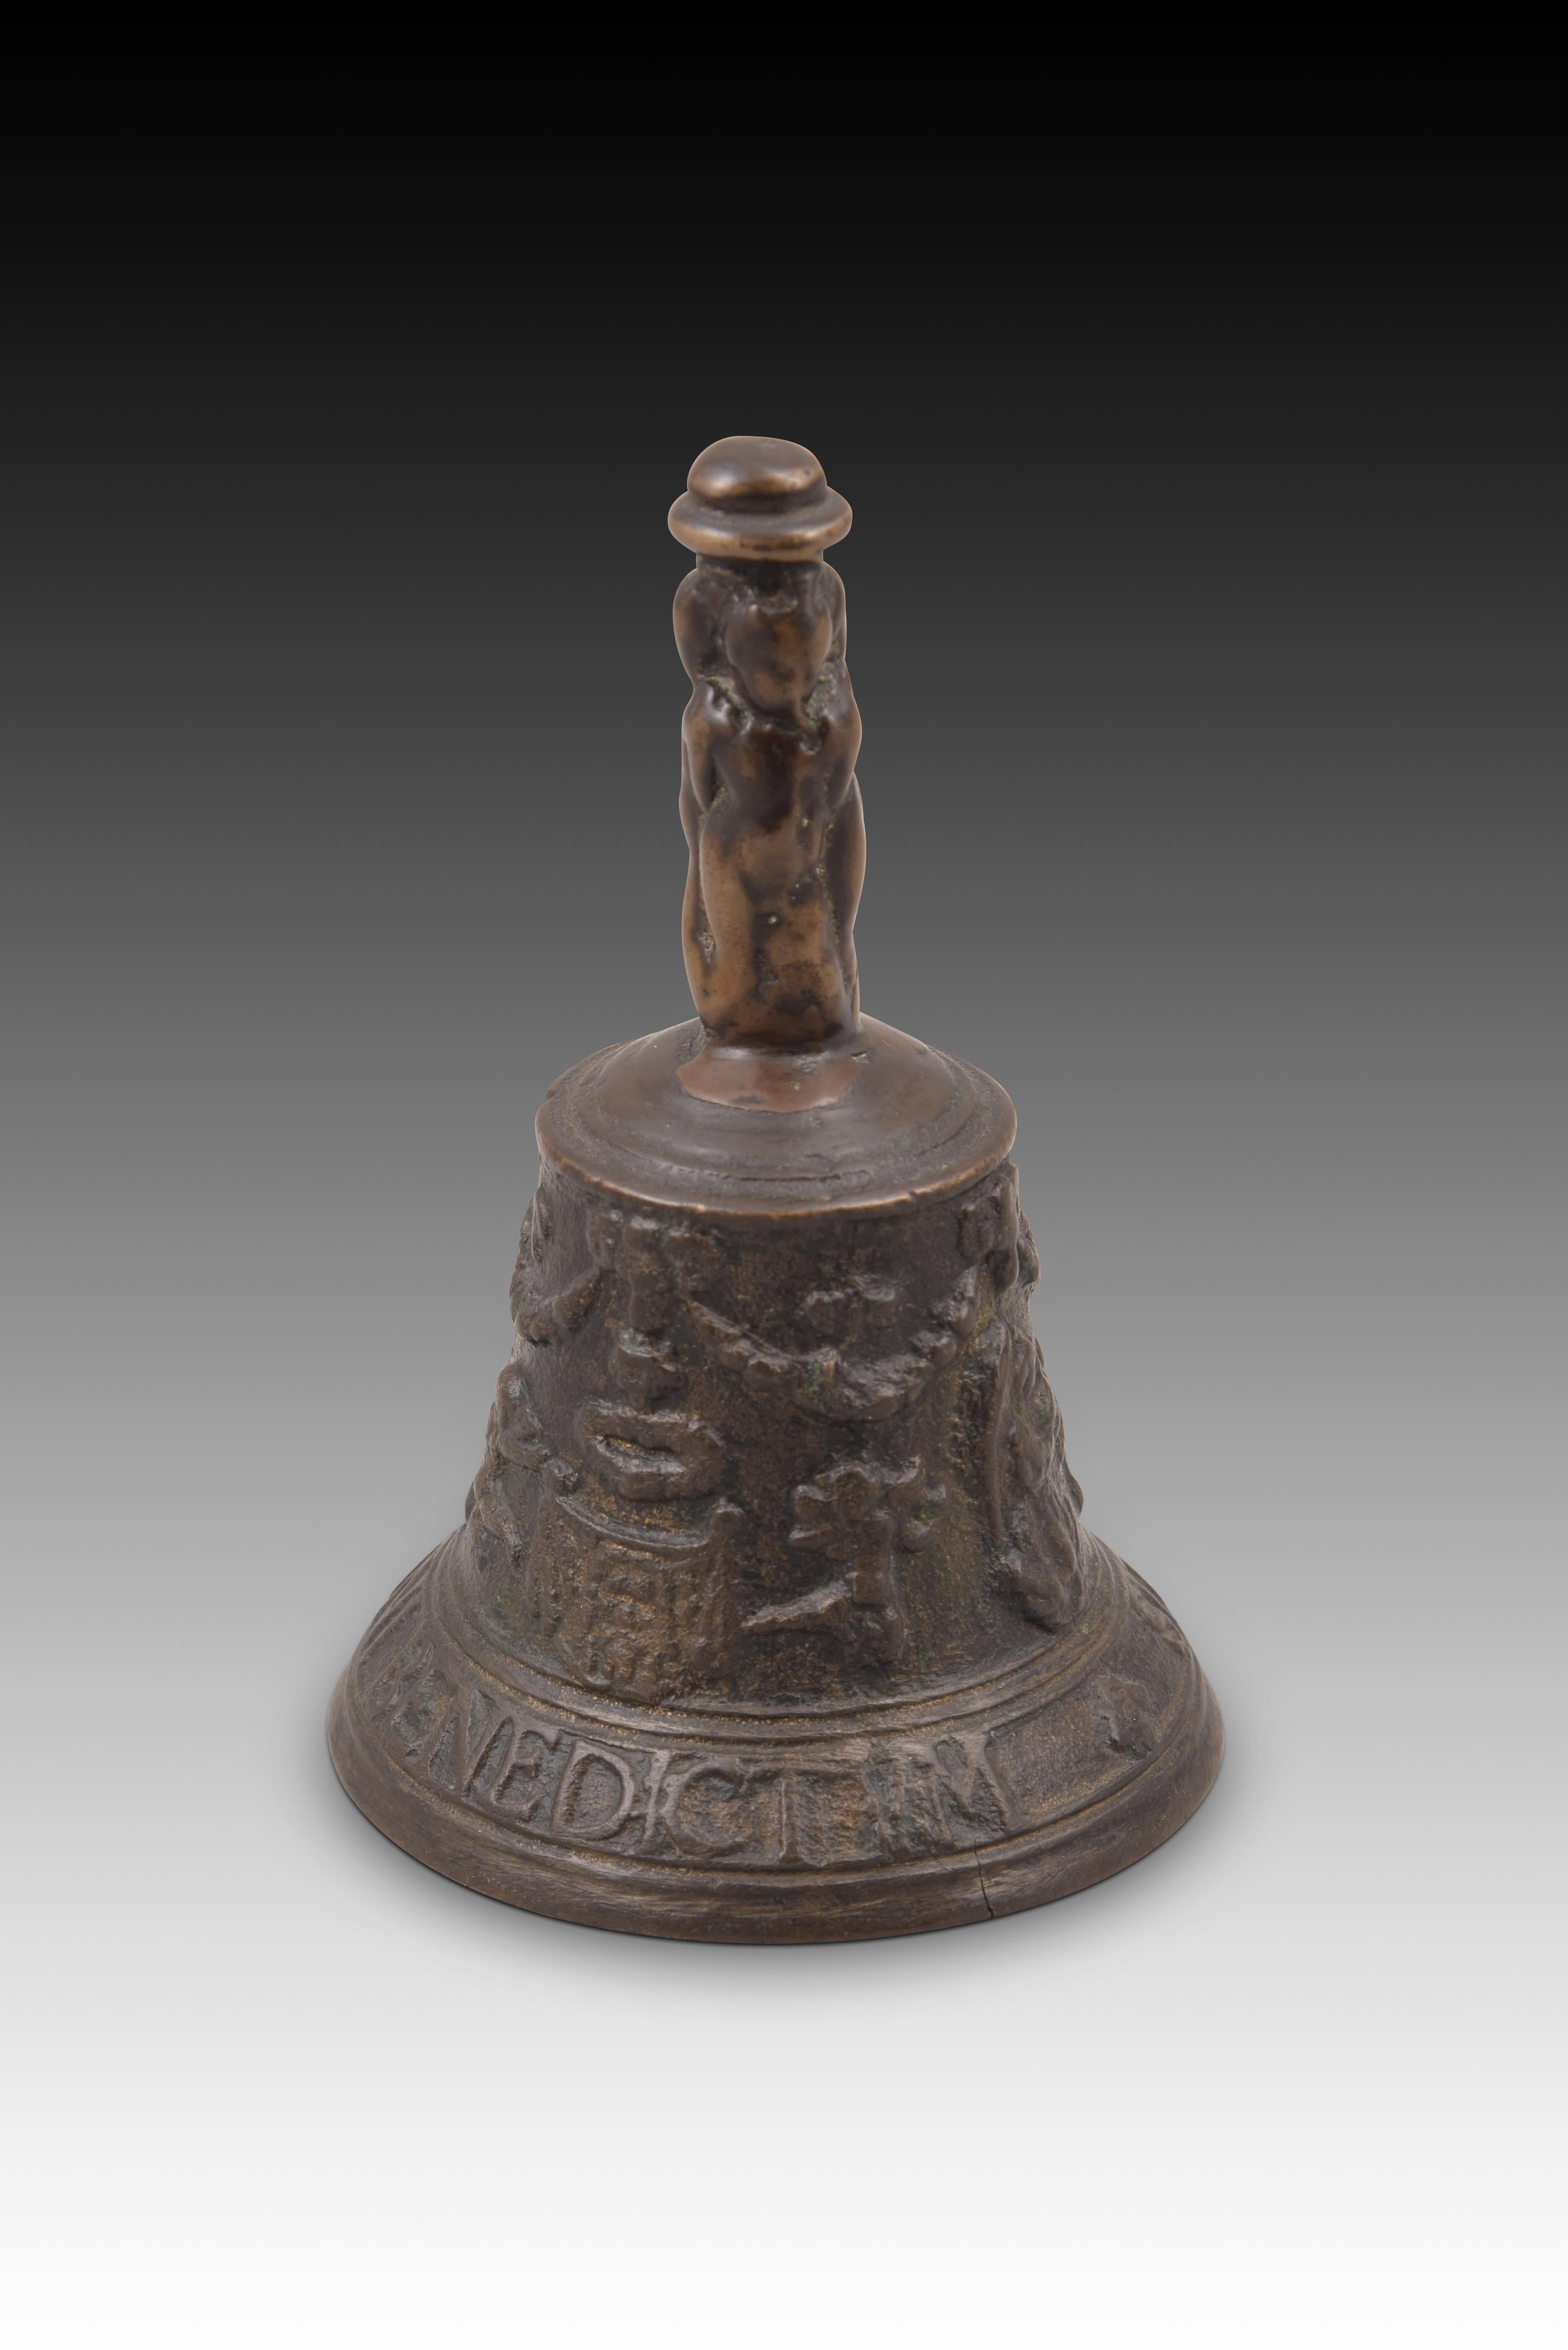 European Mechelen bell. Bronze. 16th century.